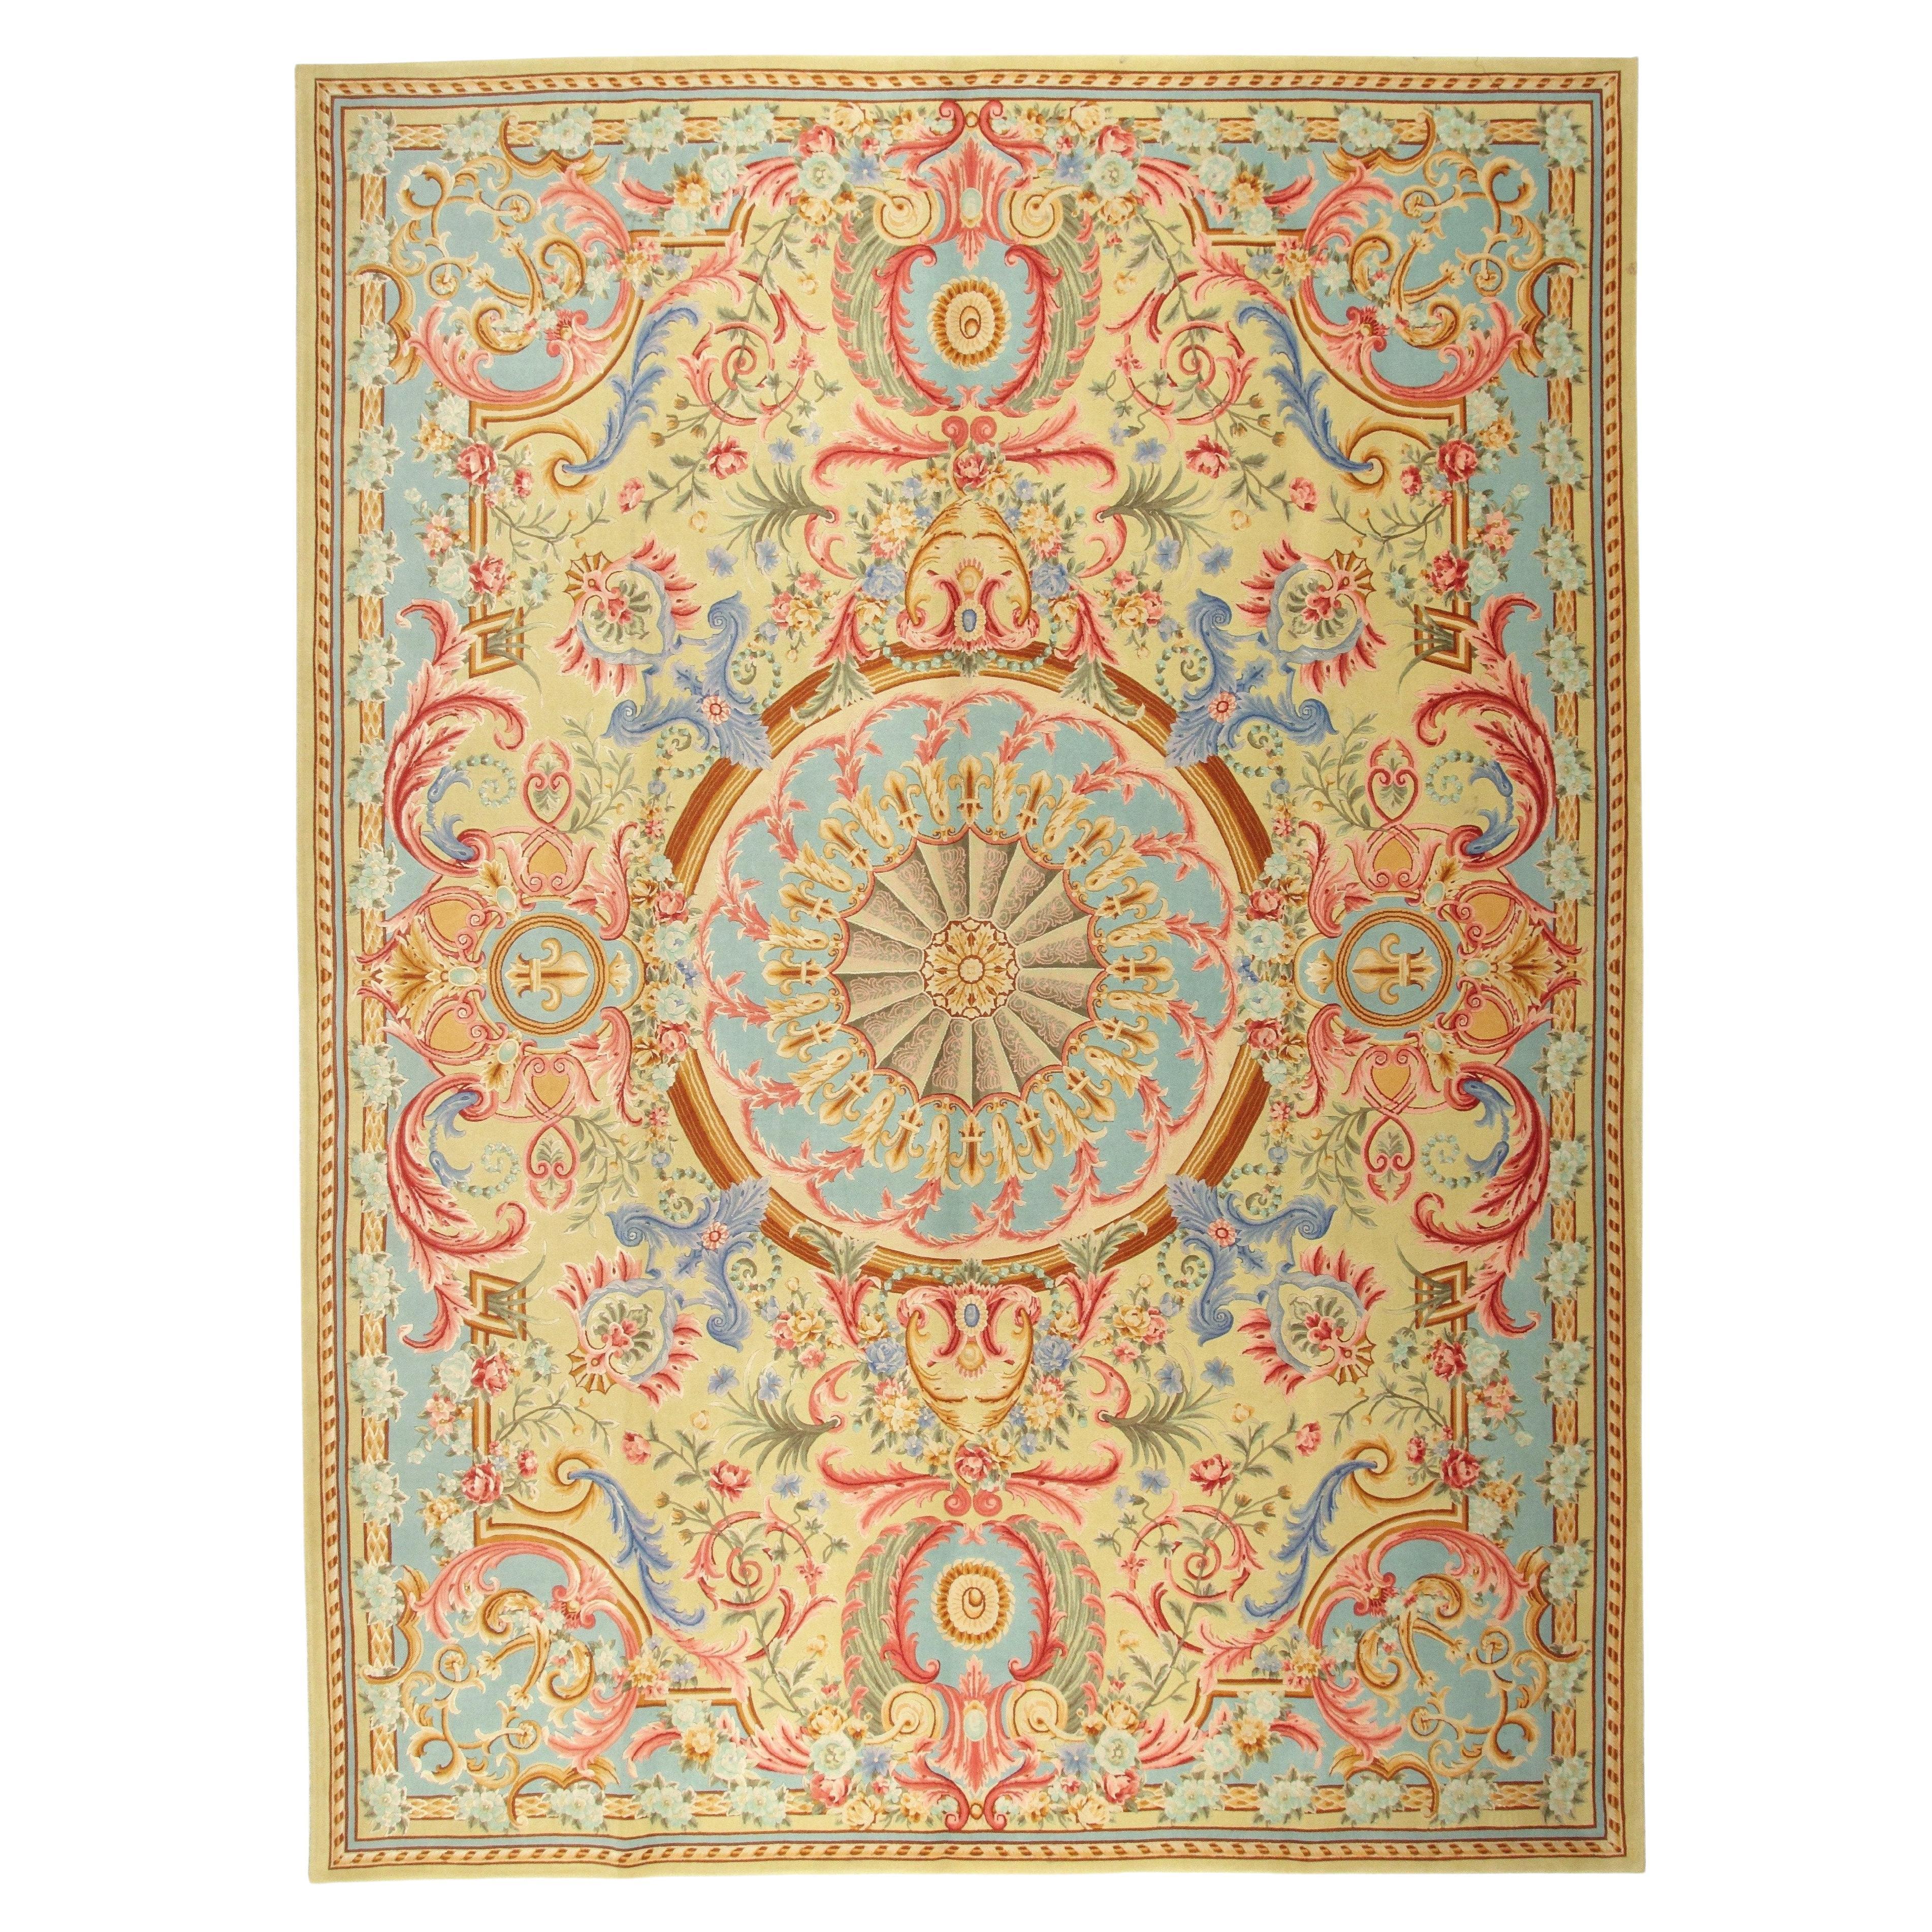 VIA COMO 'Versailles Tre' Wool and Silk Rug 8x10 One of a Kind RARE Carpet 